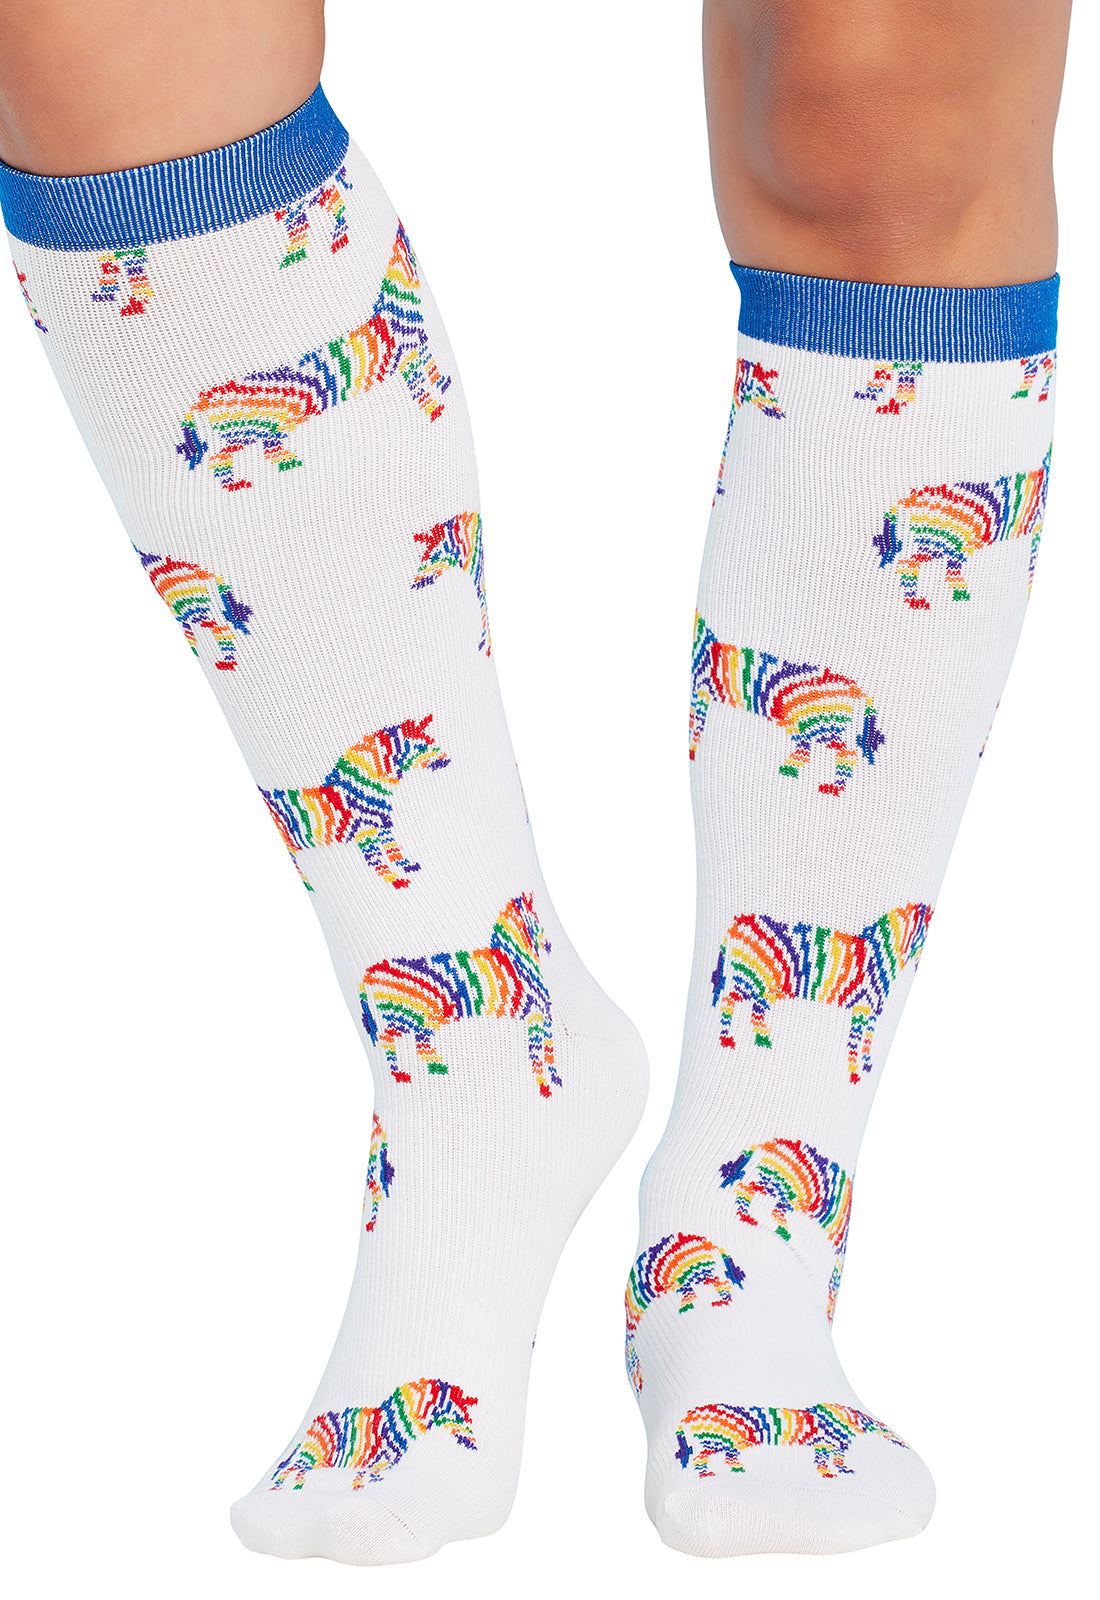 Regular Fit - Compression Socks 10-15mmHg Compression Socks Cherokee Legwear Zebra Stripes  